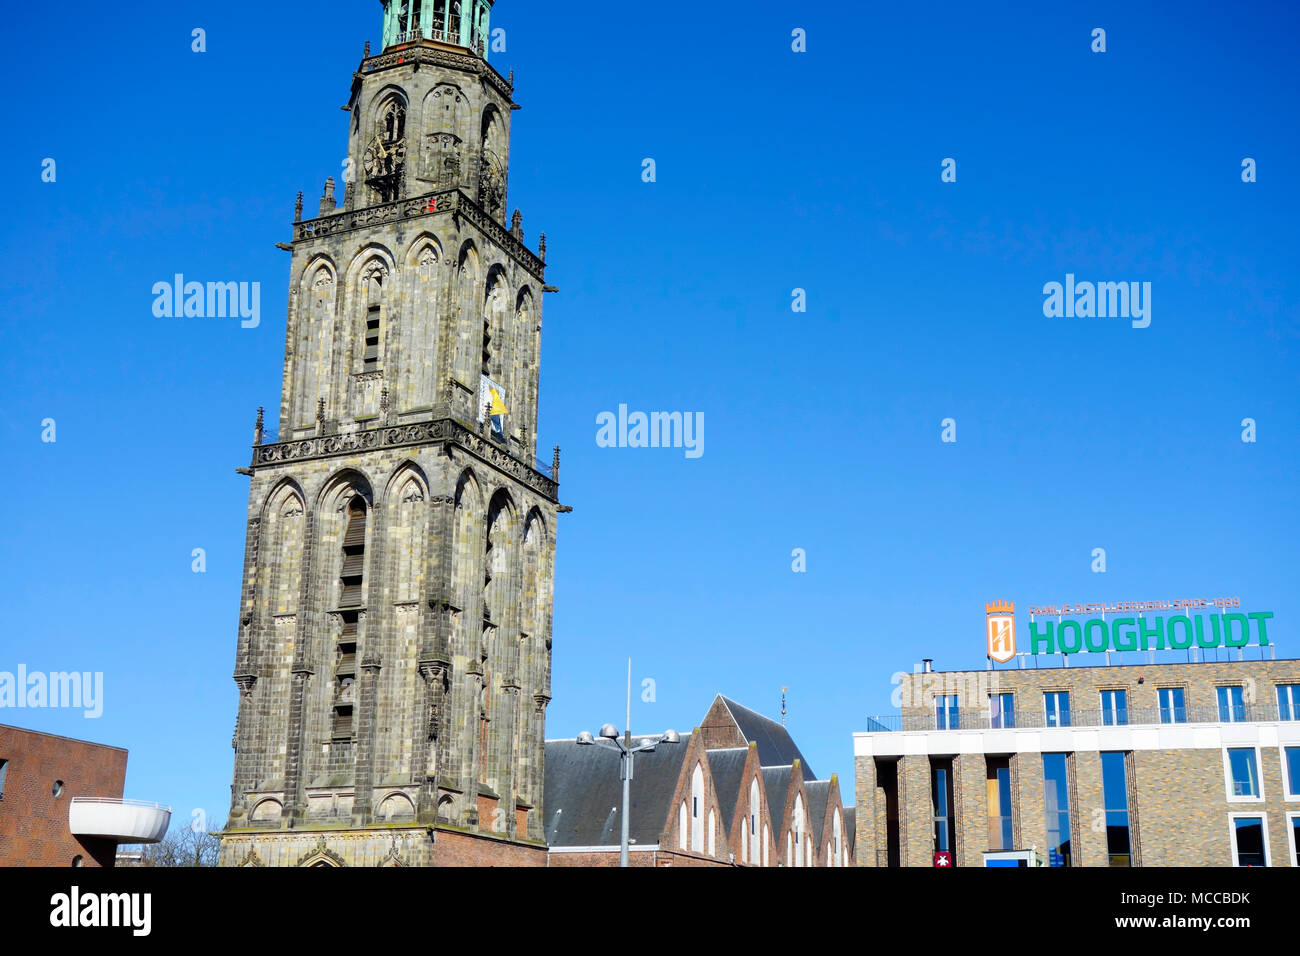 La tour Martini (Martinitoren) dans le centre de Groningen, aux Pays-Bas. Banque D'Images